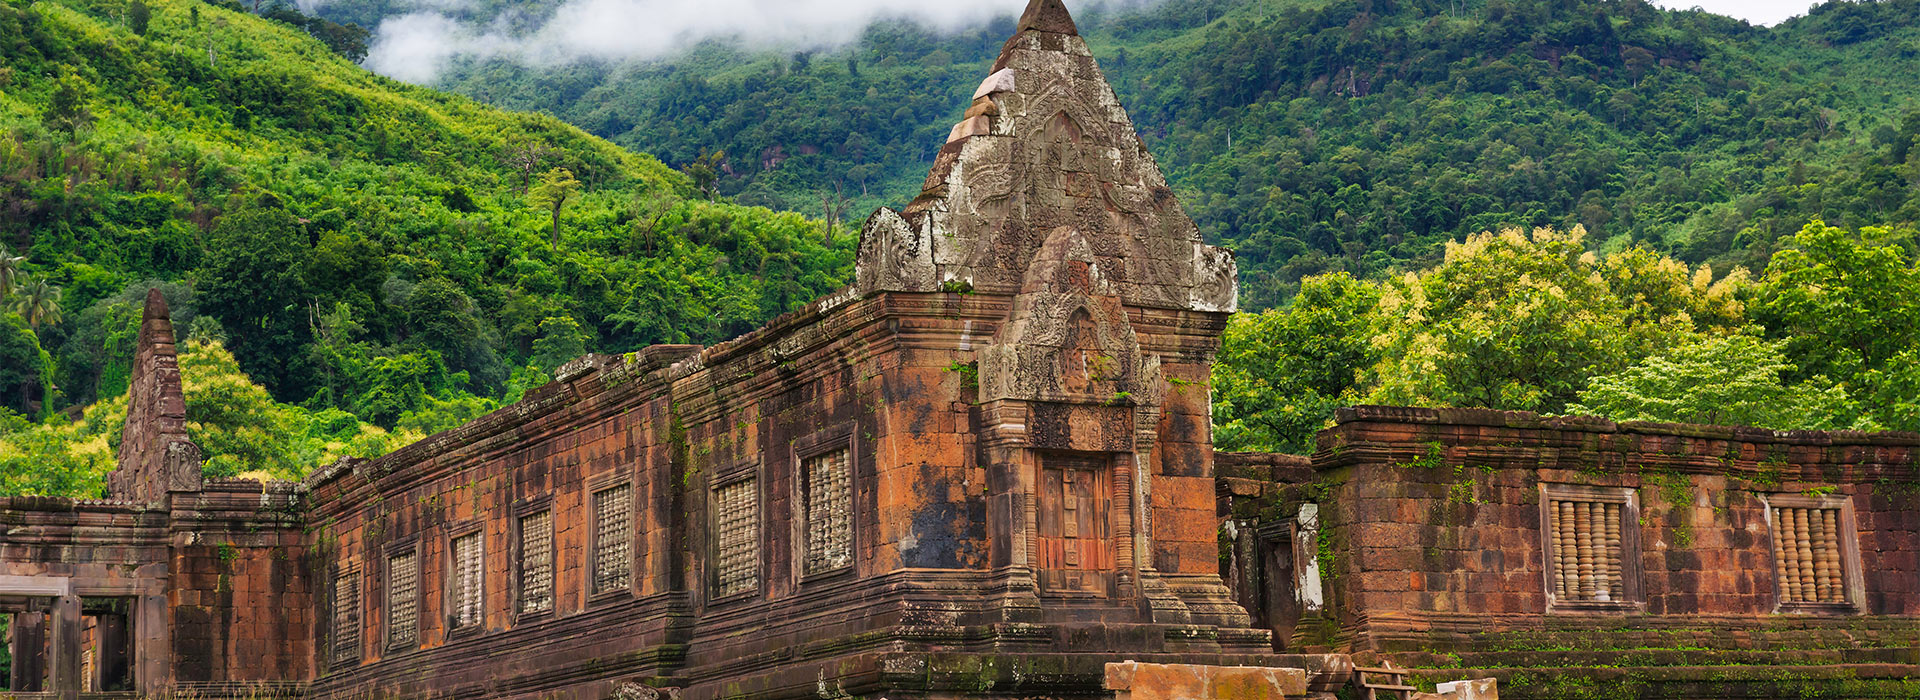 Reisen nach Laos - Individuelle Reisen nach Laos - Harry Kolb AG - Tourismus